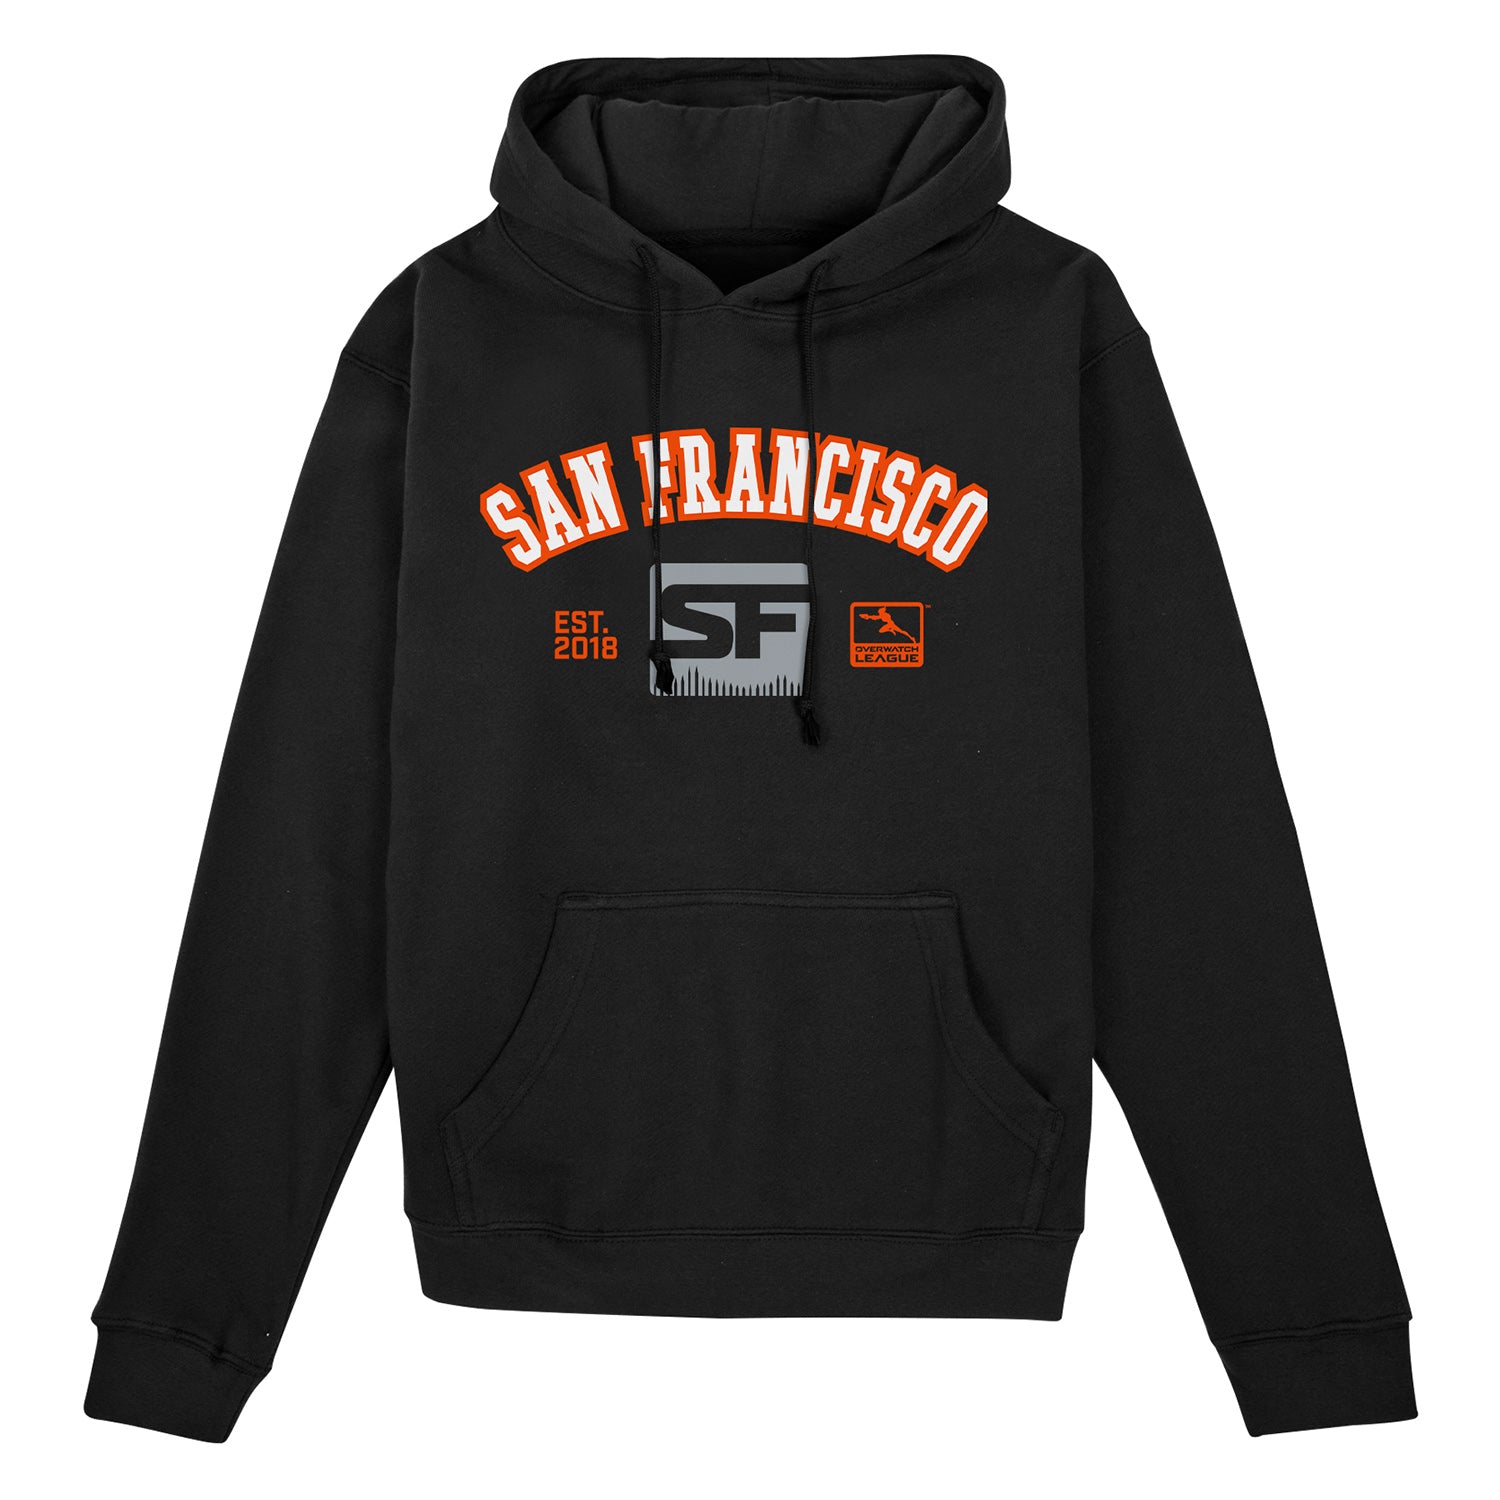 San Francisco Shock Black Collegiate Hoodie - Front View